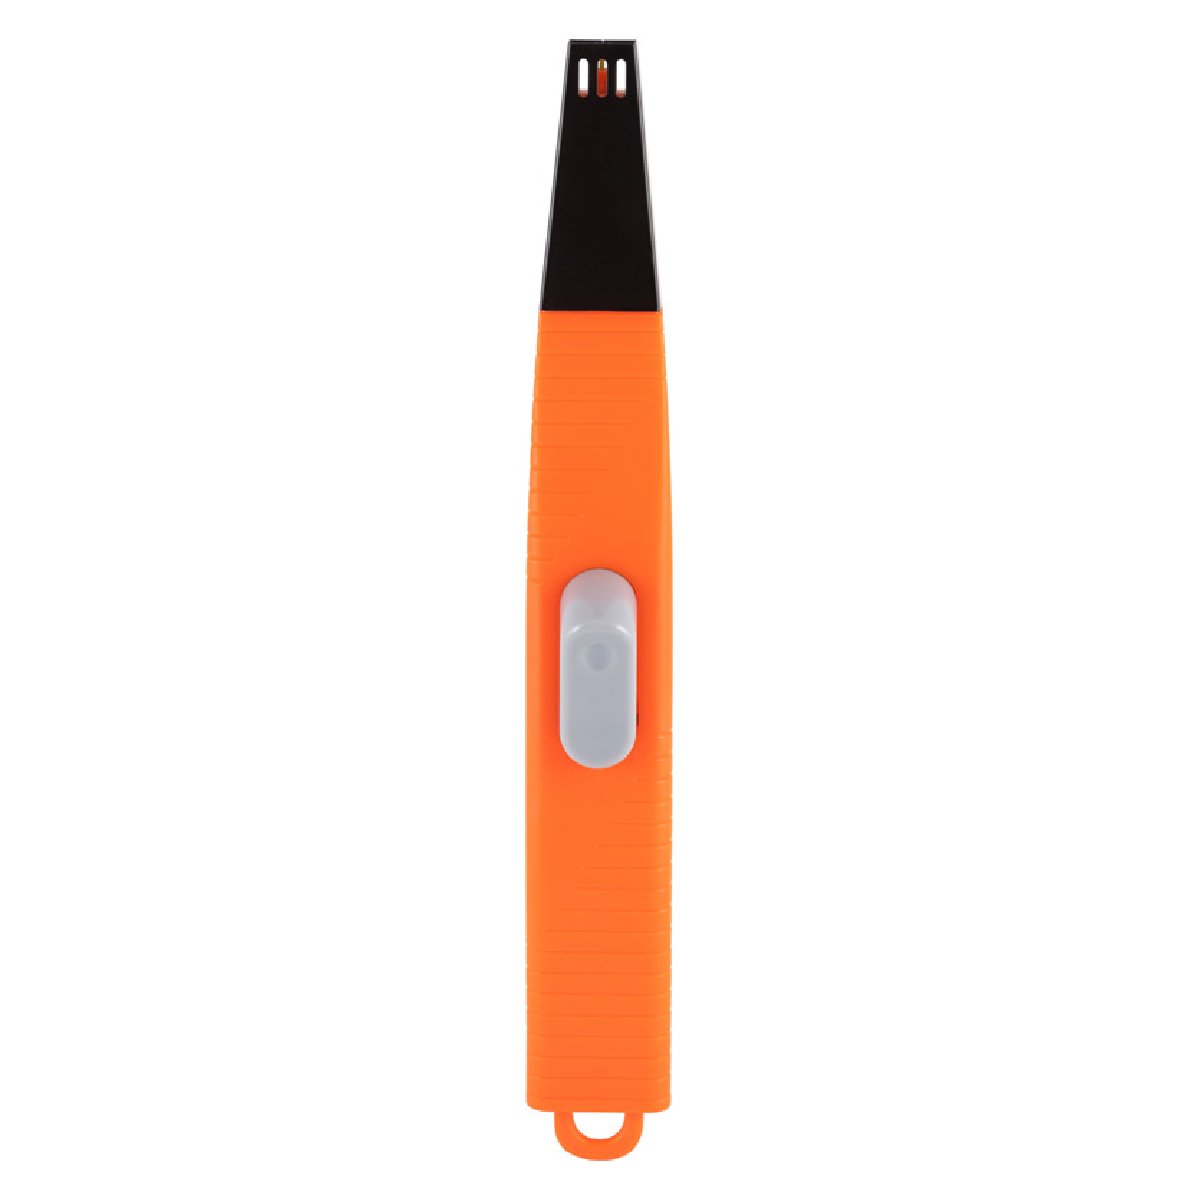 Пьезозажигалка HOMESTAR HS-1206 оранжевая (102774)Купить